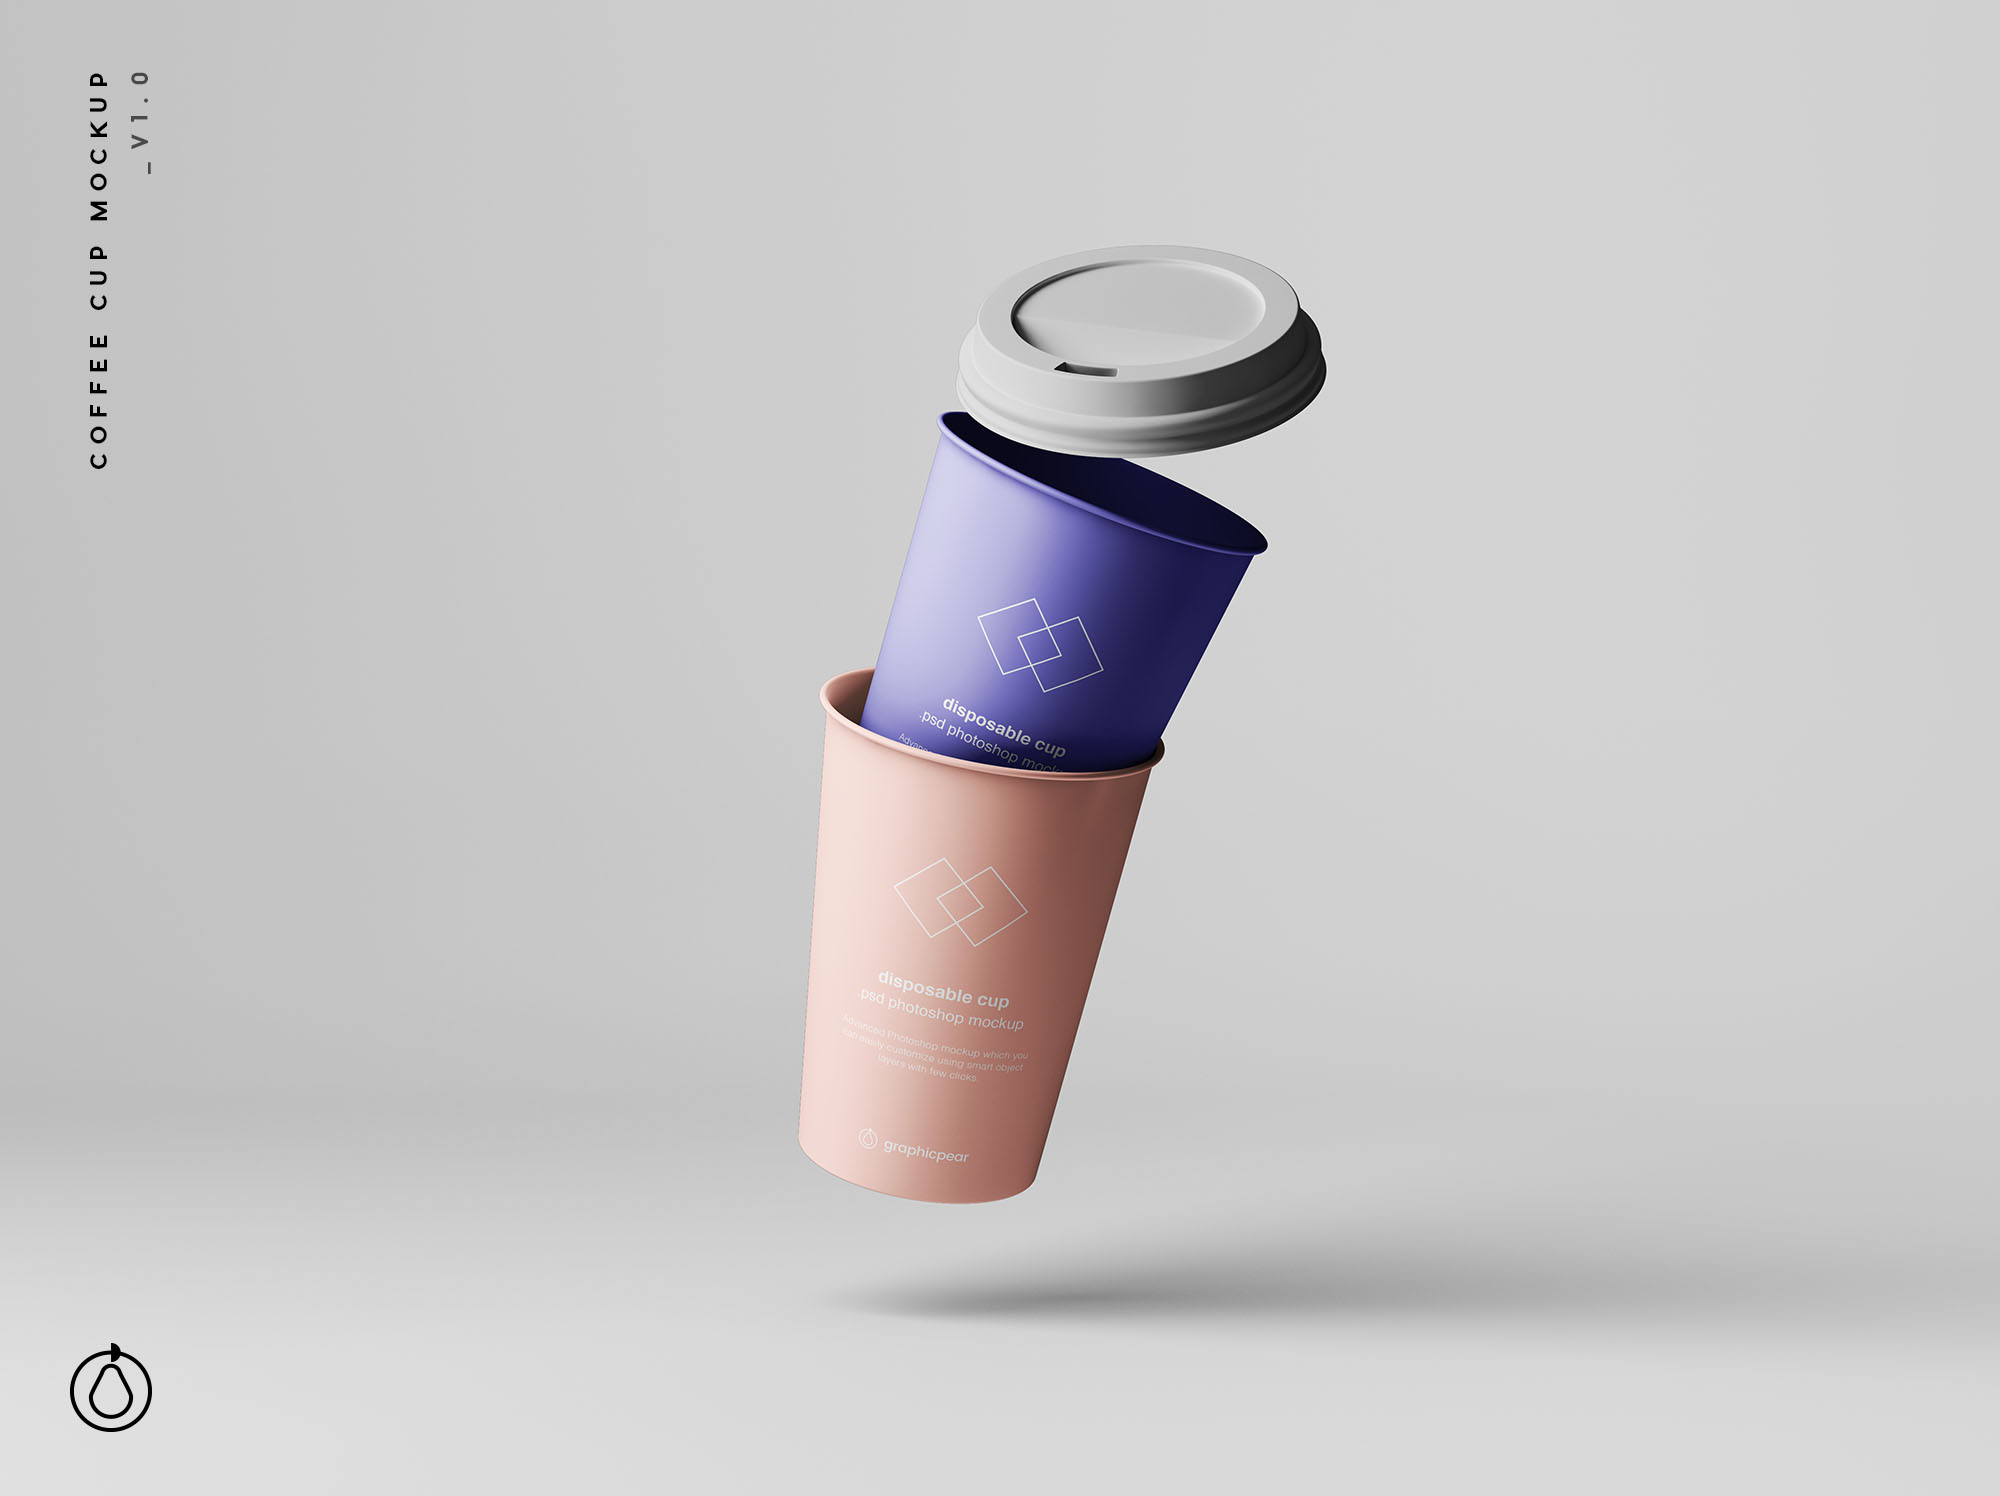 7个咖啡纸杯定制外观设计效果图样机模板 7 Coffee Cup Mockups插图